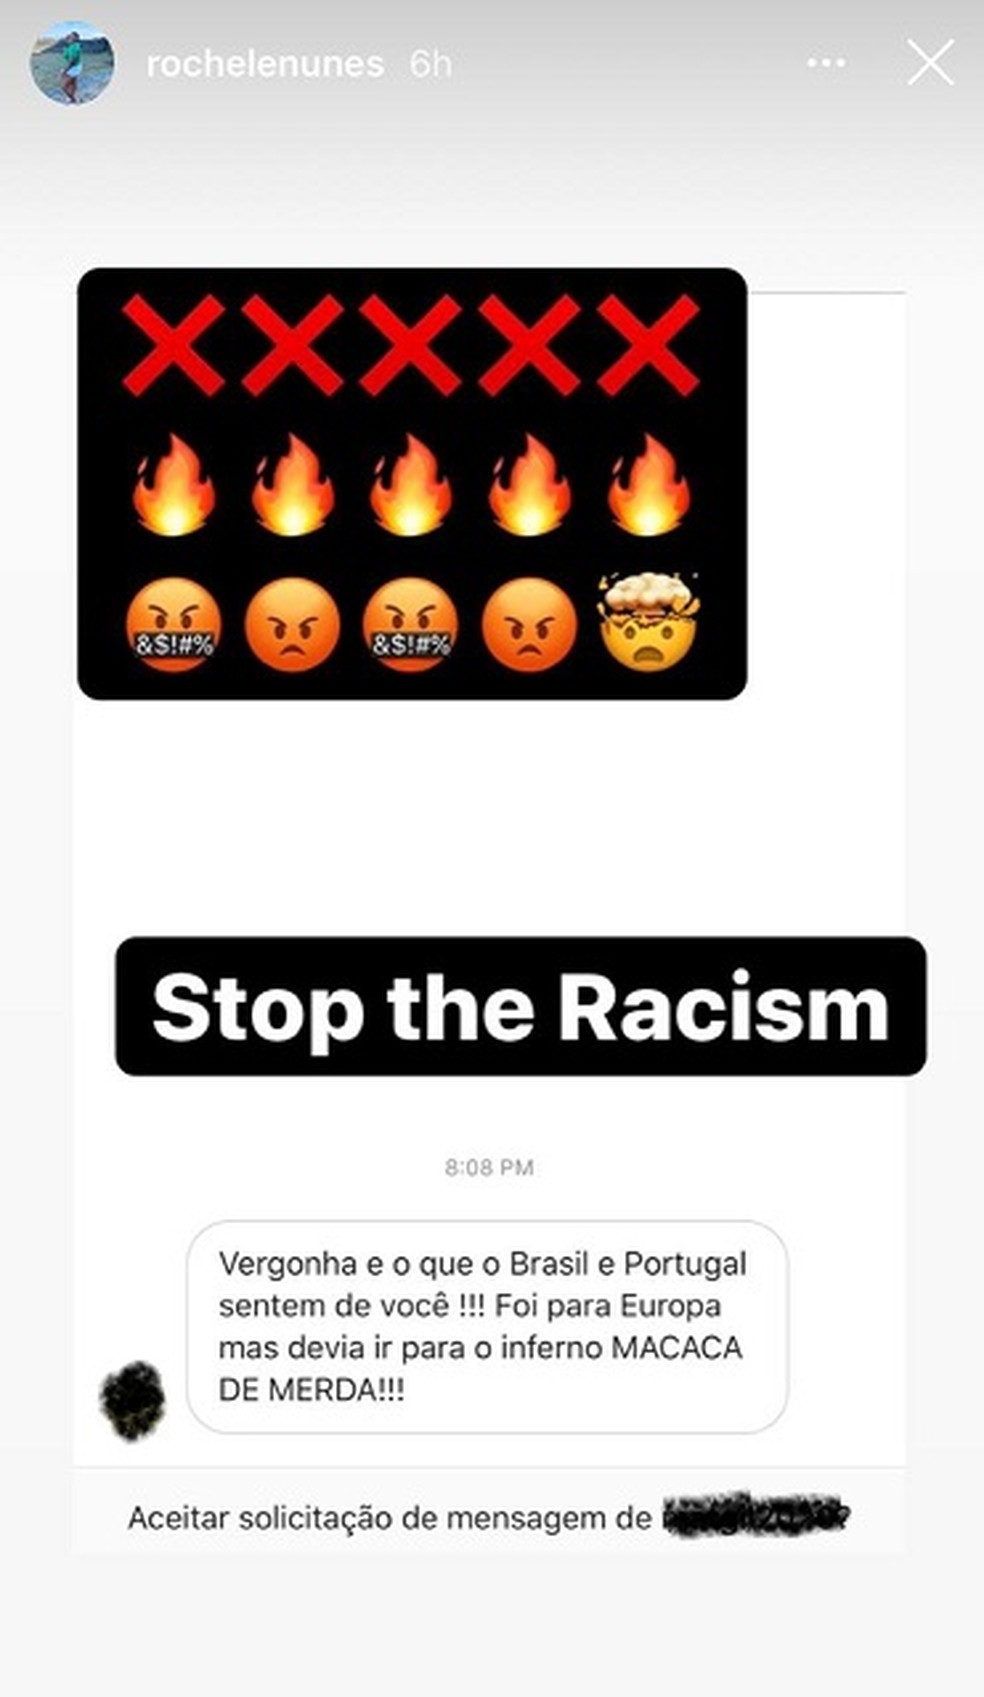 Rochele Nunes recebeu mensagem racista nas redes sociais em 2020 - Reprodução / Instagram